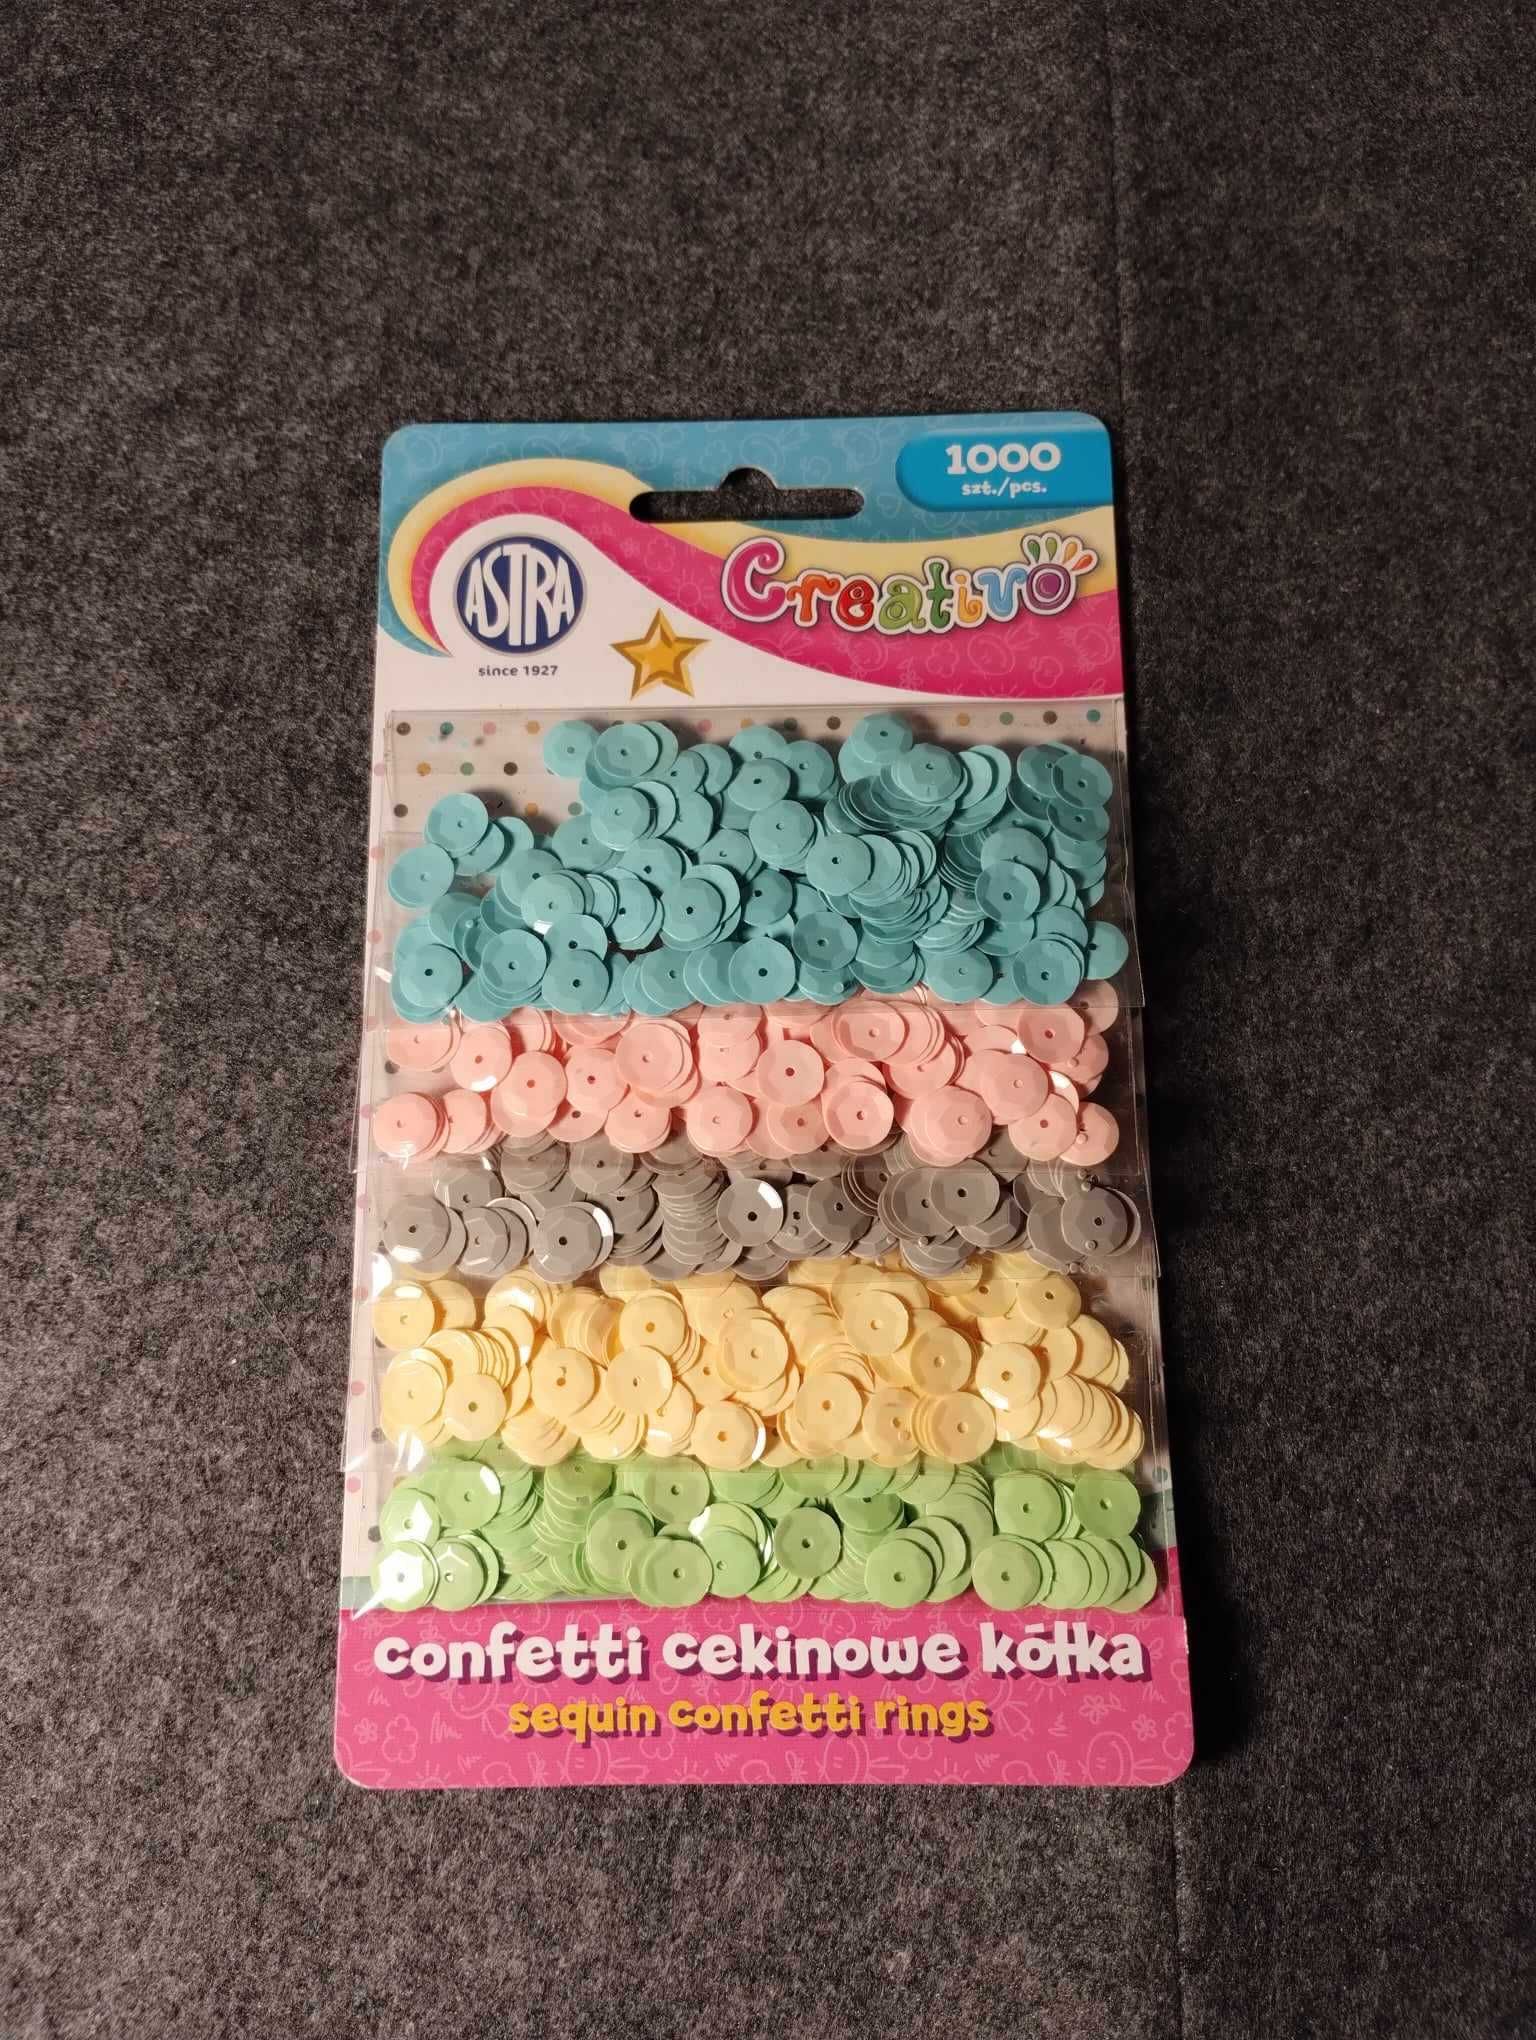 Confetti cekinowe kółka mix 5 kolorów pastelowych 1000 sztuk